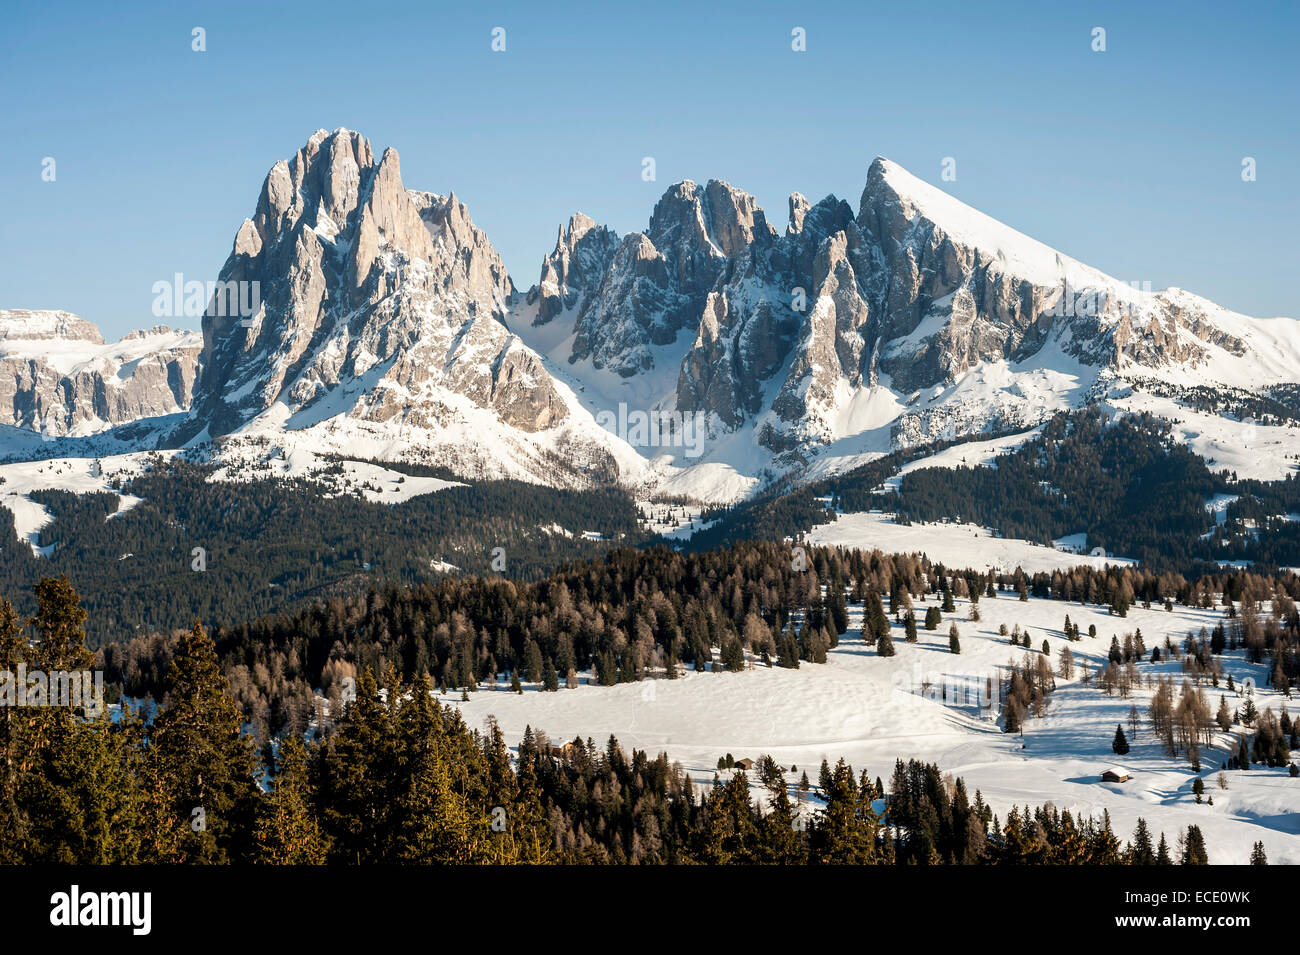 View of Langkofel and Plattkofel  mountains, Santa Cristina, Valgardena, Alto Adige, Italy Stock Photo